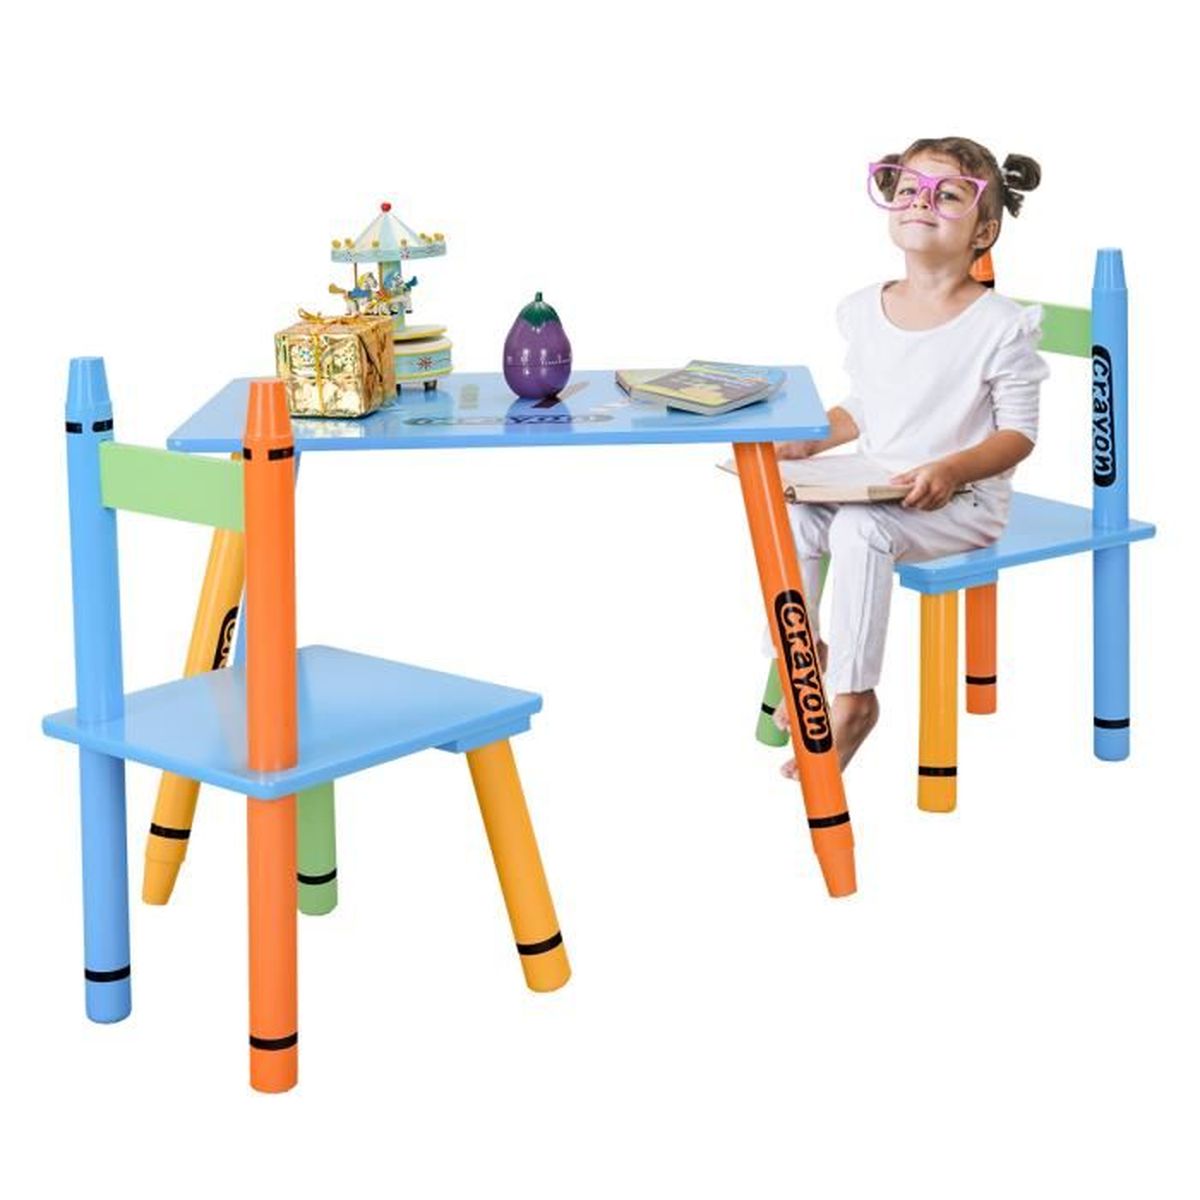 DREAMADE Ensemble Table et 2 Chaises Enfant en Bois avec Forme de Crayon pour Trvailler,Manger,Dessiner,Jouer Filles et Garçons 60 x 36,5 x 42CM Coloré